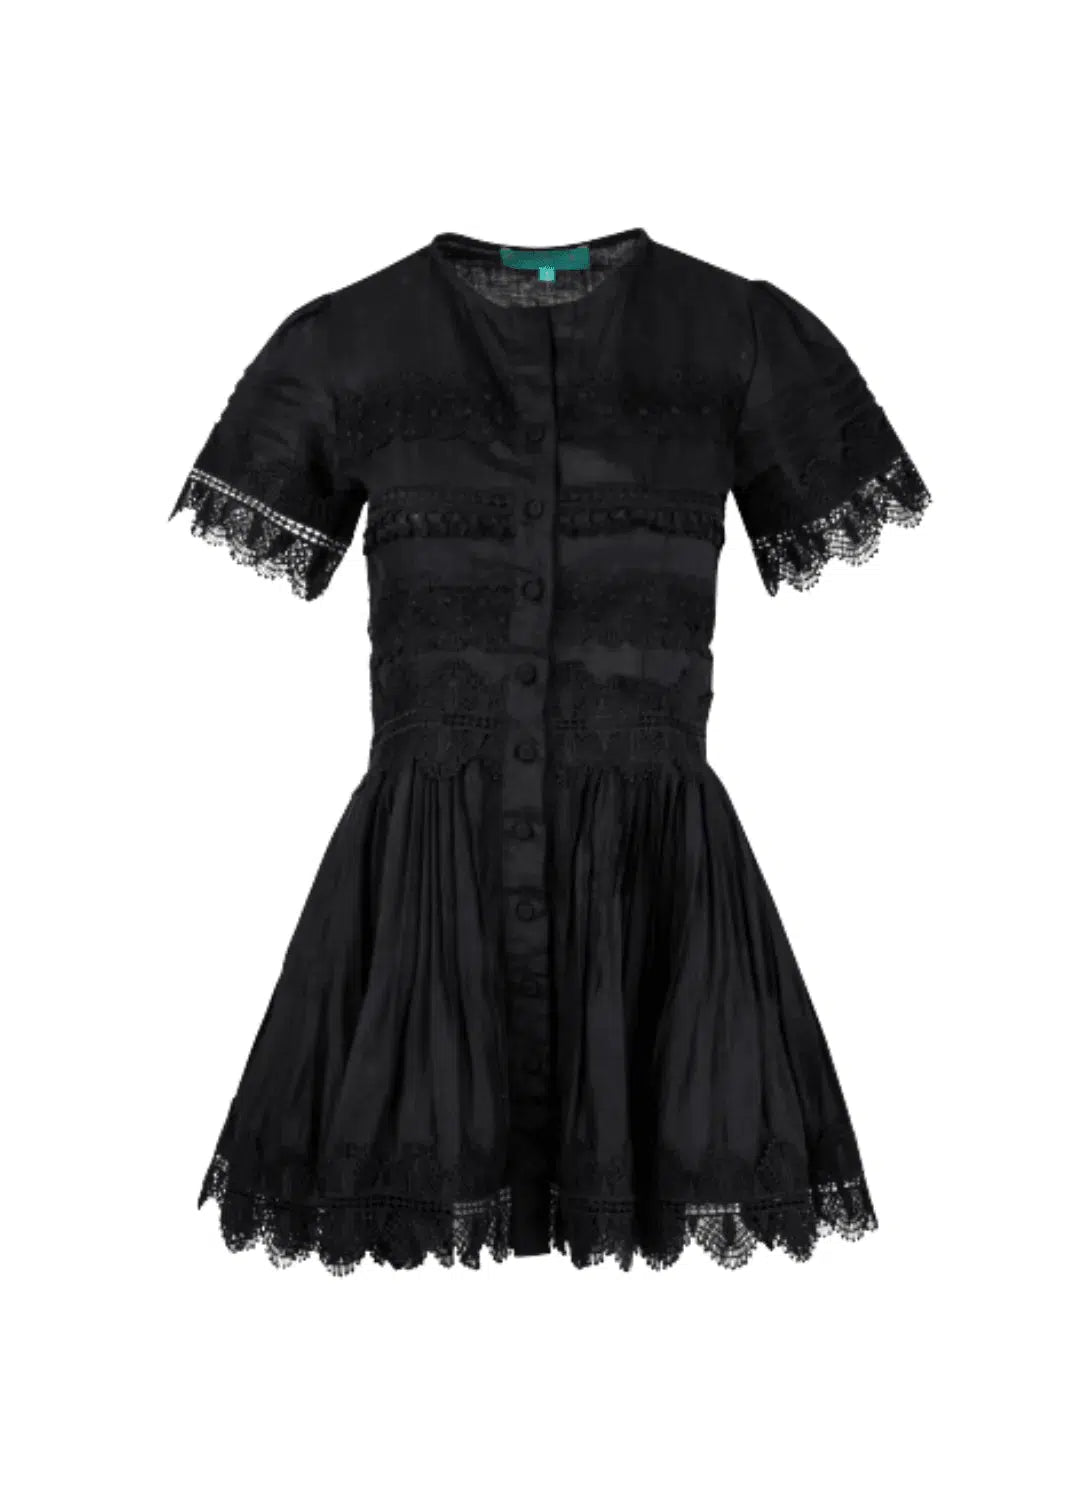 Violetta Dress in Black-Dress-Waimari-Debs Boutique